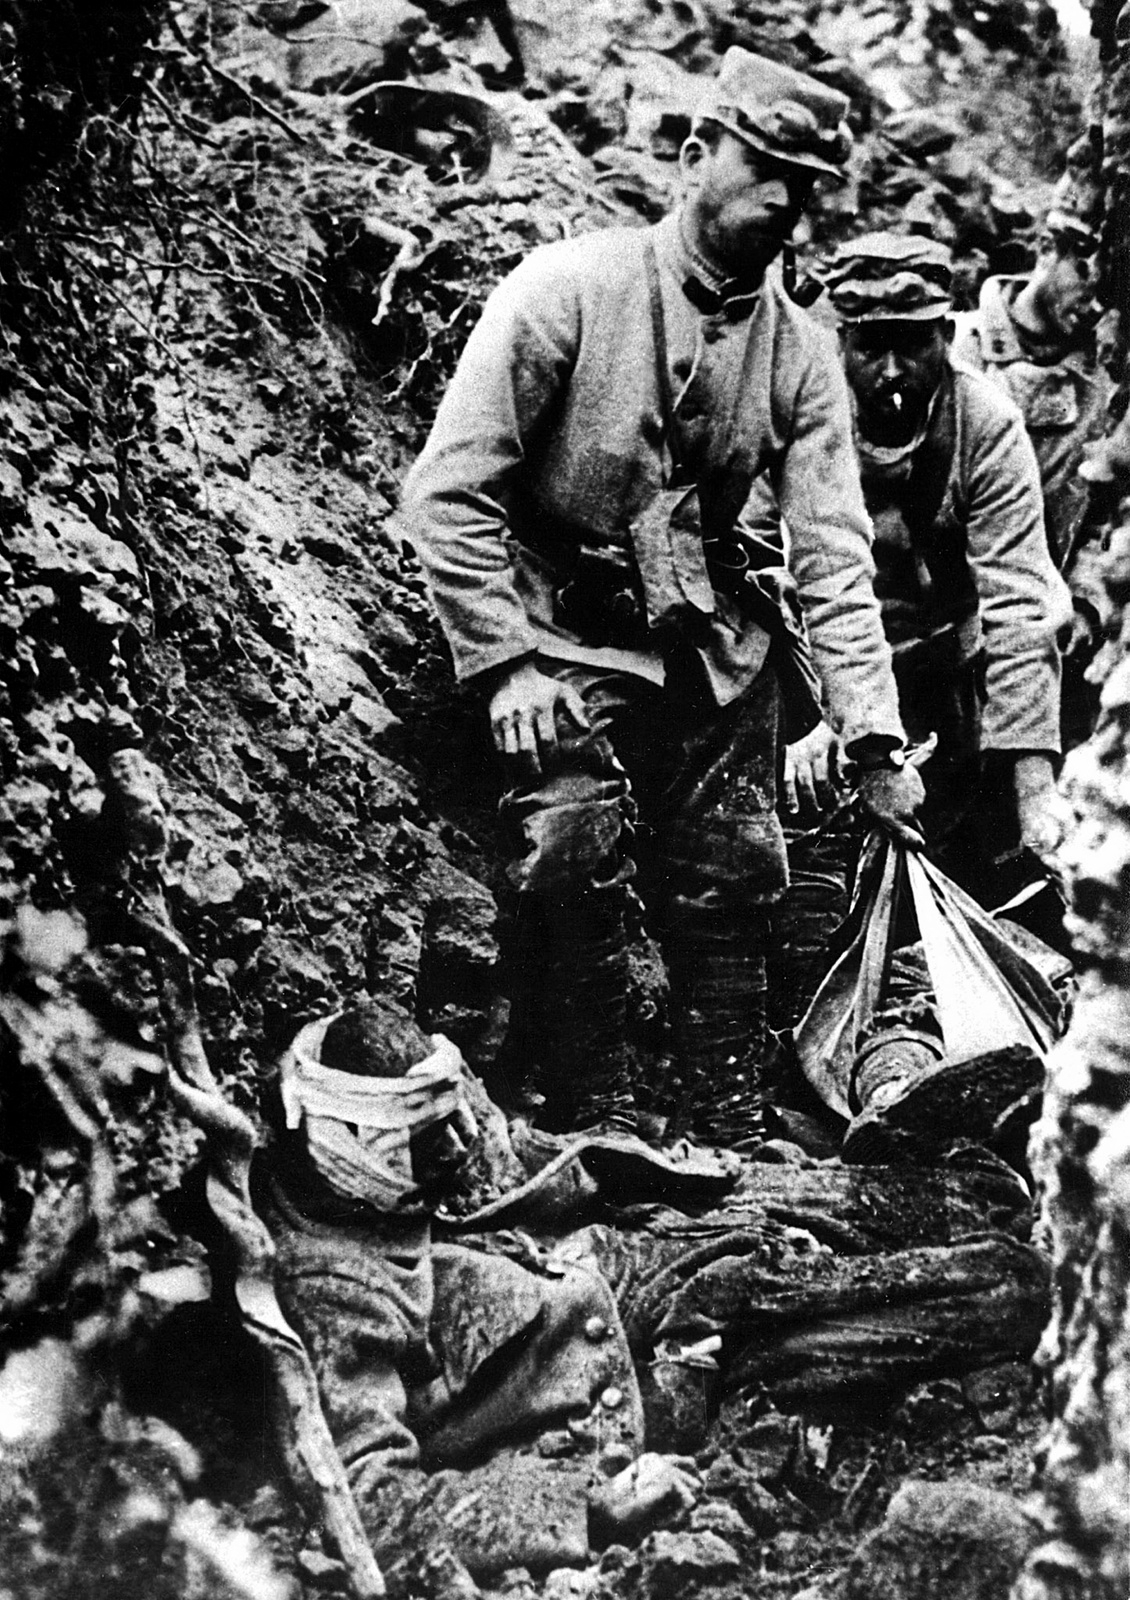 Kriget utvecklades till ett ställningskrig i skyttegravar. Miljoner dog, lemlästades eller skadades av gas som sattes in under striderna. På bilden är det franska soldater som tar hand om en sårad kamrat nere i skyttegraven.